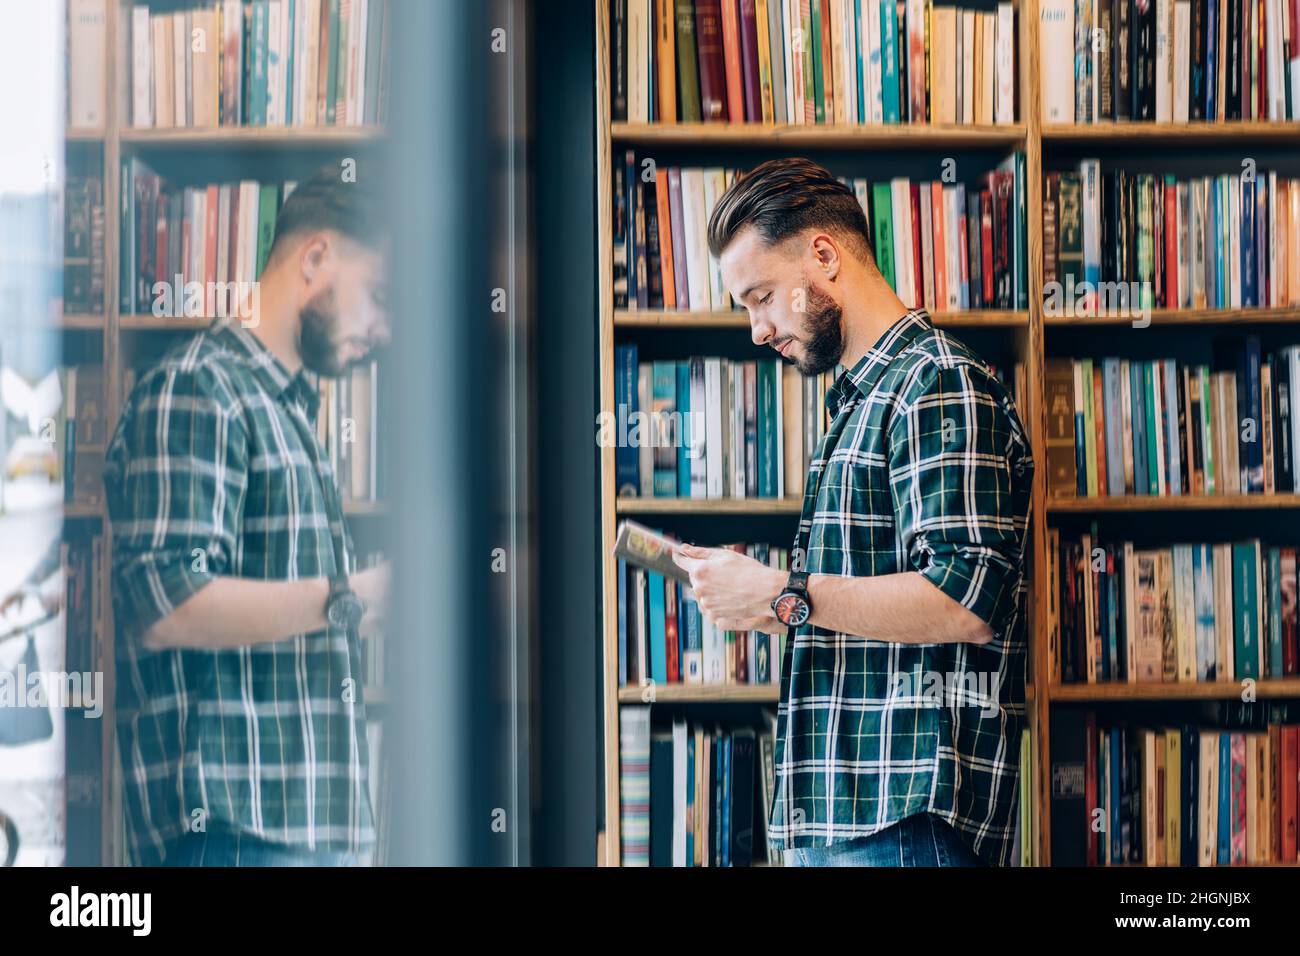 Vue latérale d'un étudiant de race blanche dans des vêtements décontractés lisant le meilleur roman vendeur dans la librairie publique Banque D'Images